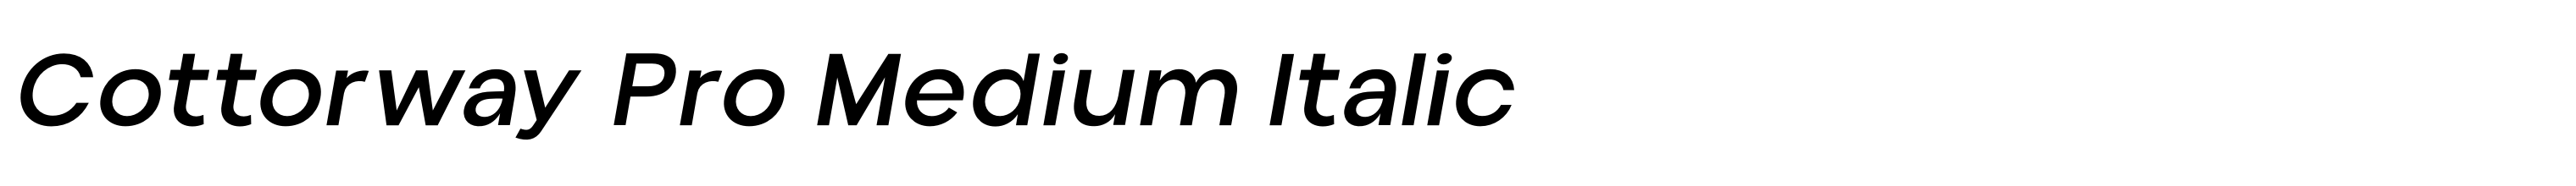 Cottorway Pro Medium Italic